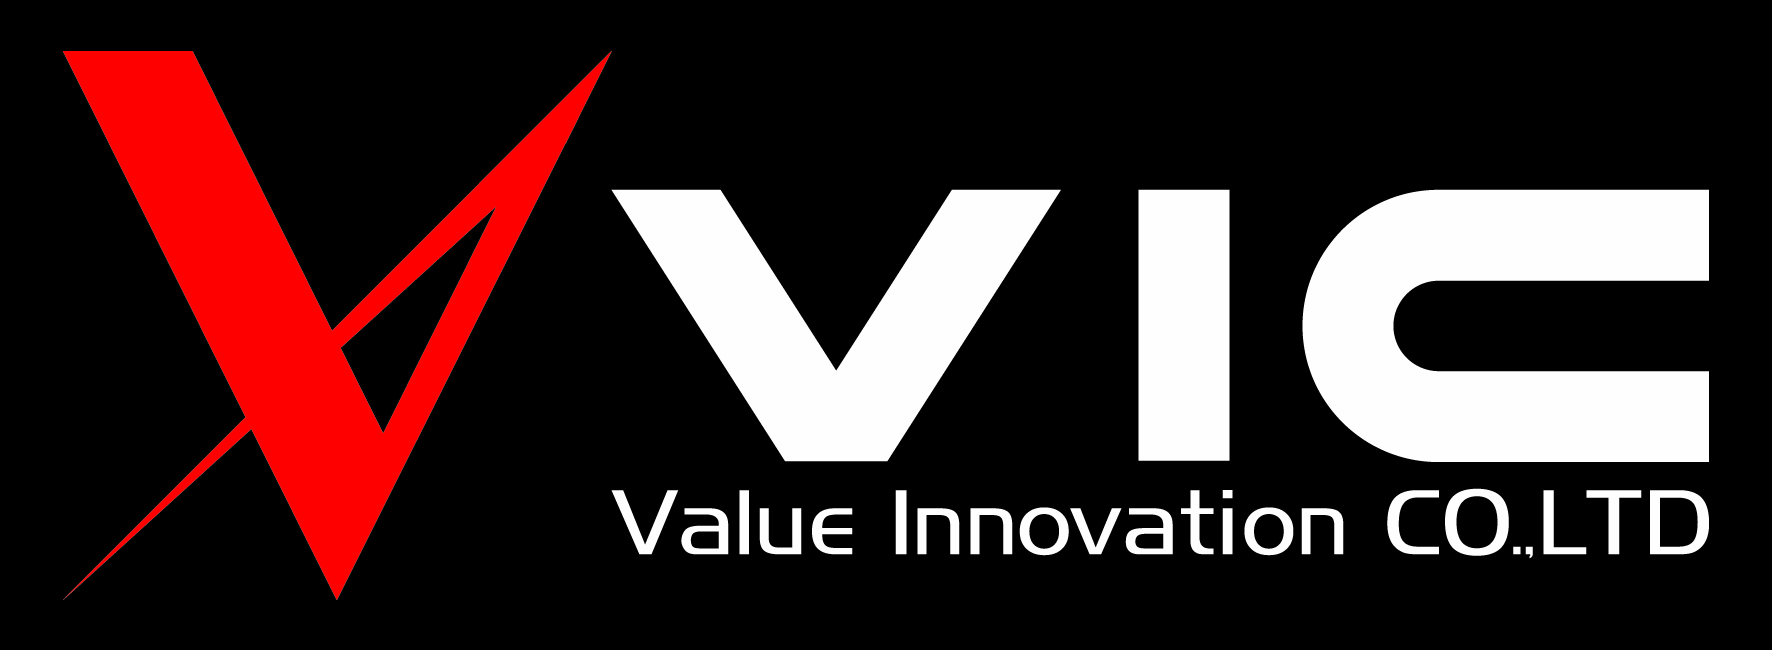 Value Innovation CO., LTD. (Japan)